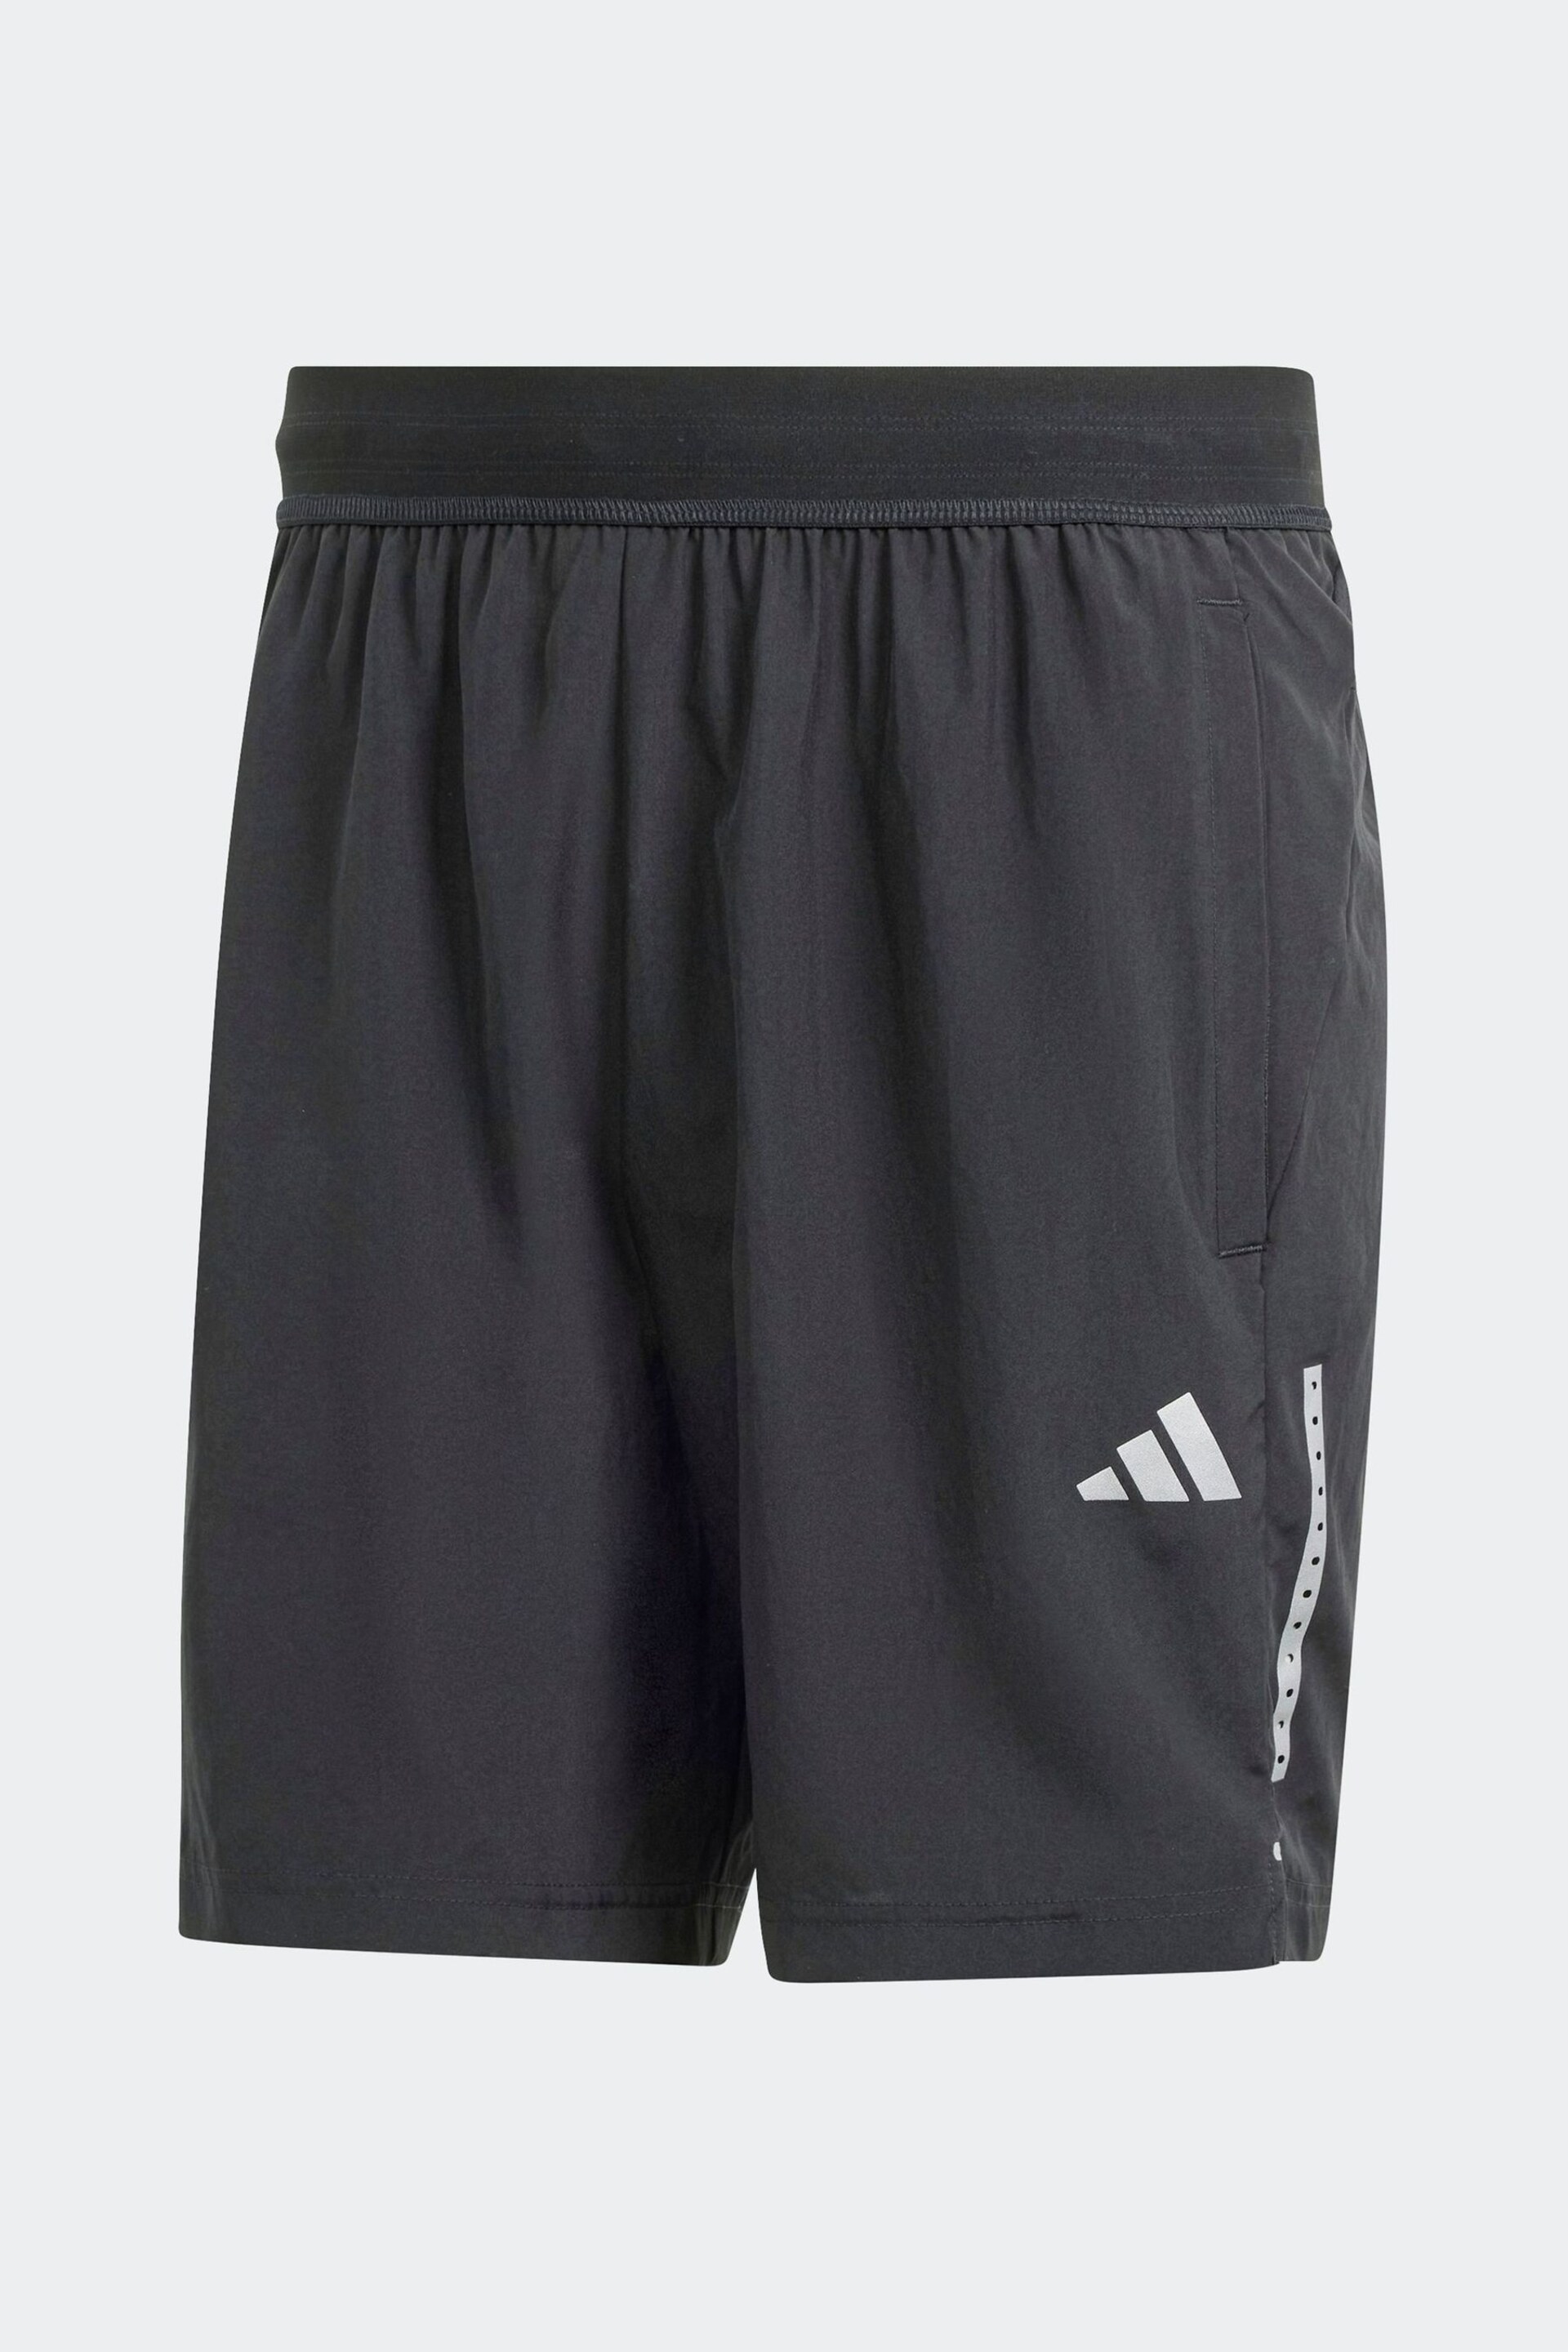 adidas Black Gym+ Training Woven Shorts - Image 1 of 5